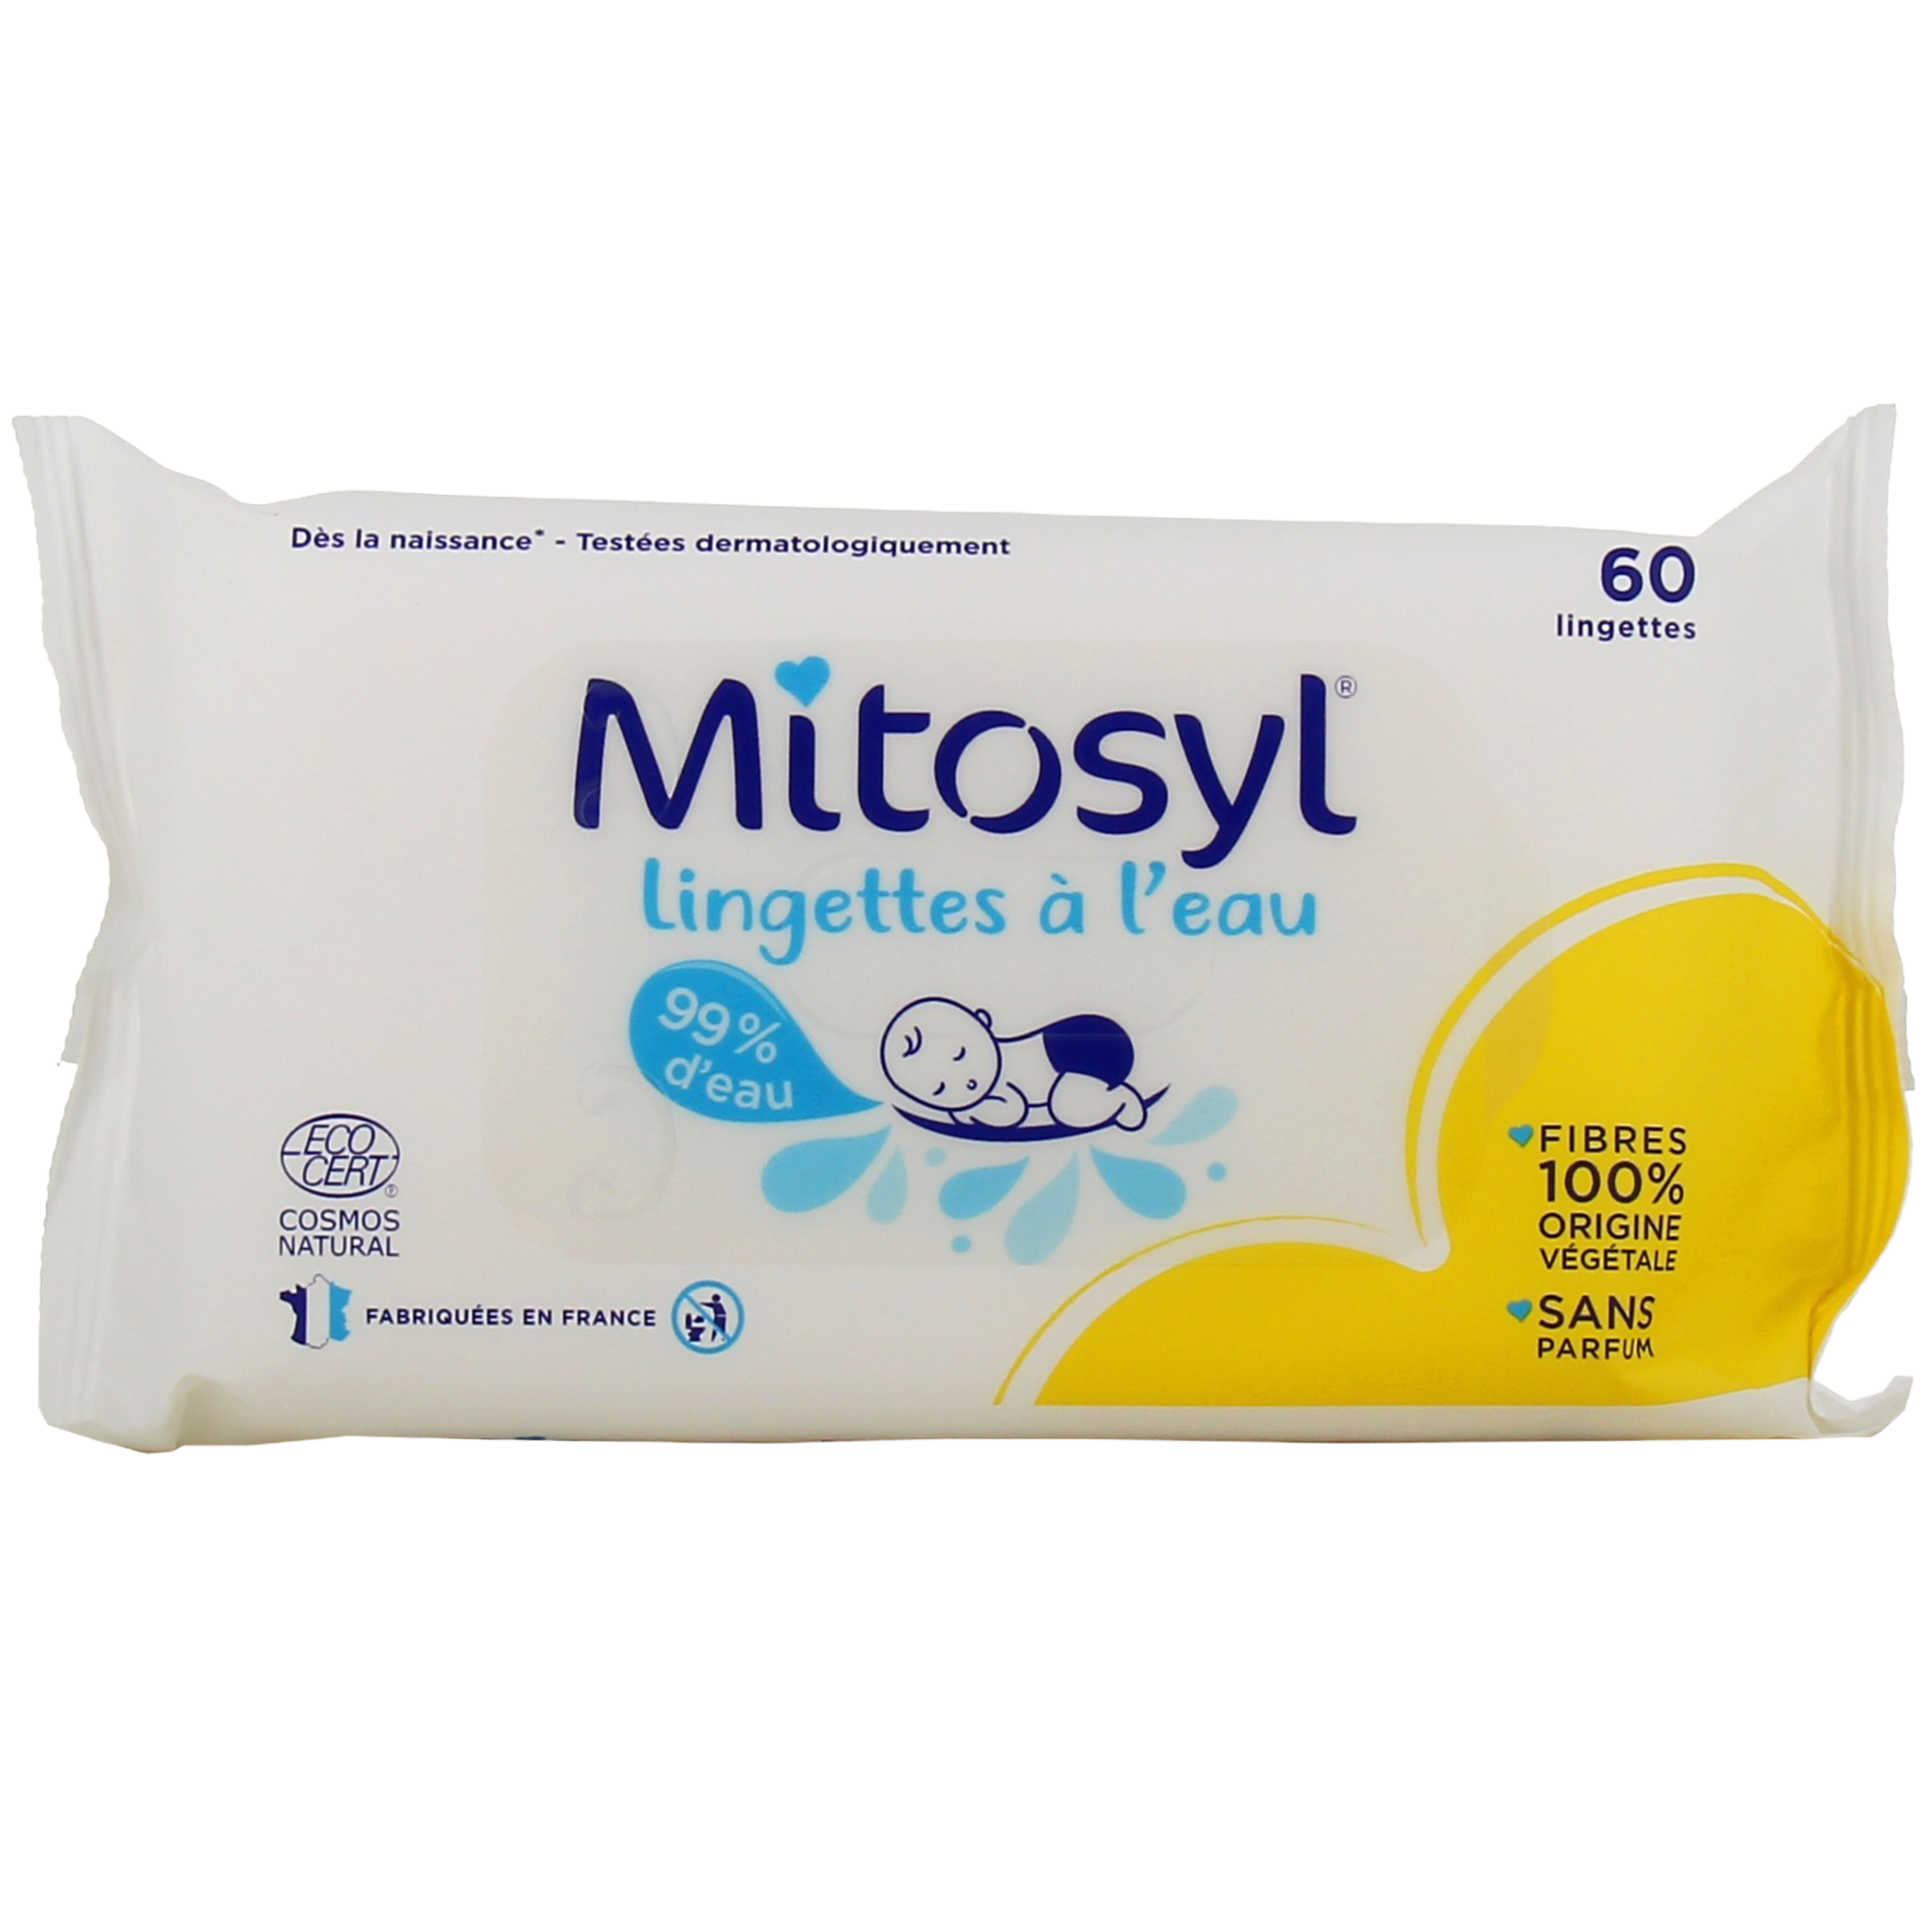 Mitosyl Lingettes Biodégradables Nettoie et apaise la peau - Paramarket